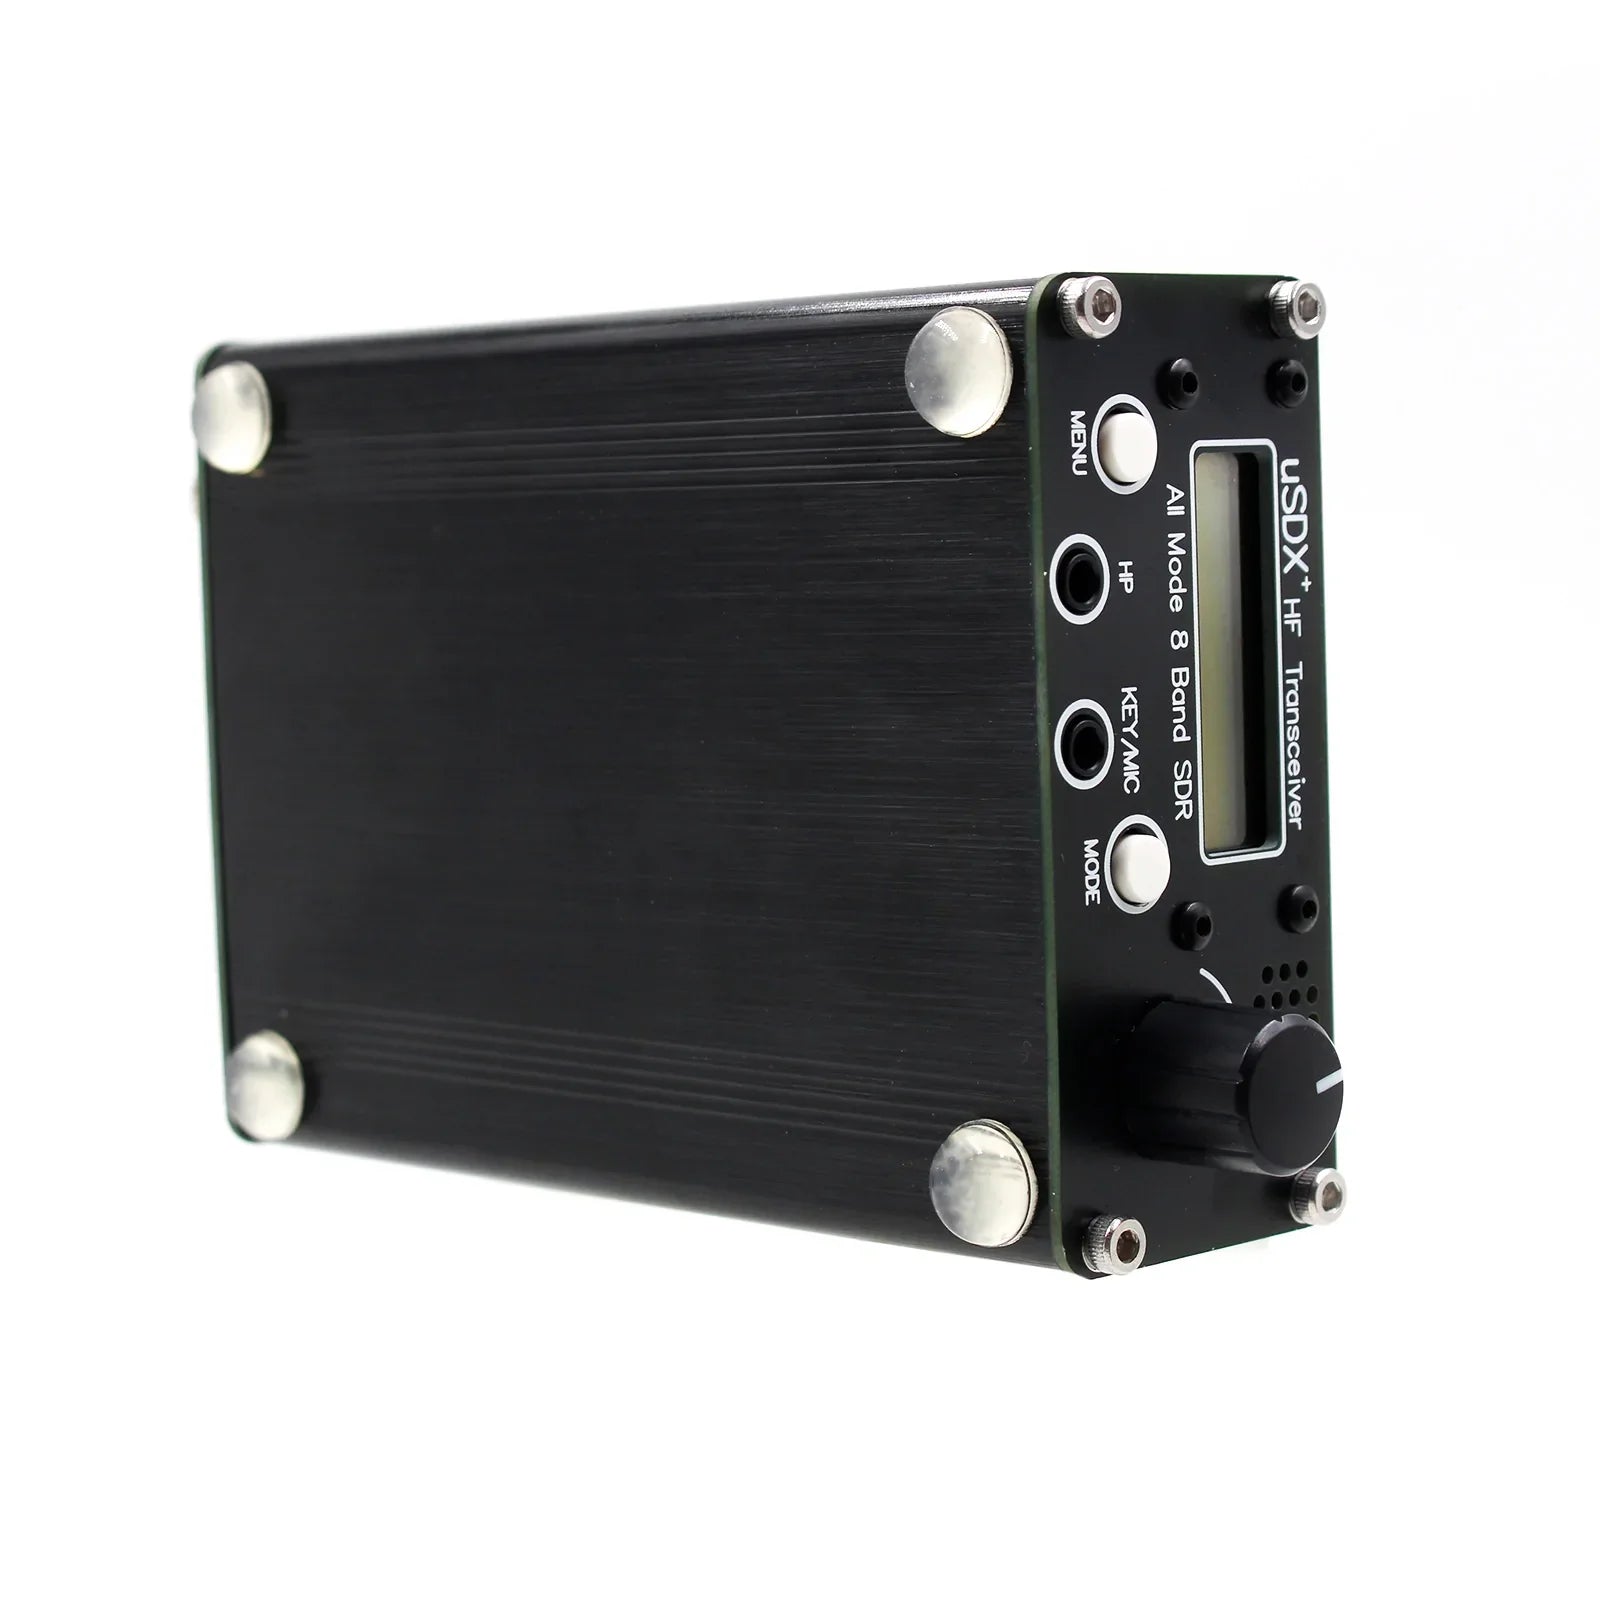 usdr usdx+ Plus V2 8 Band SDR Modo completo HF Ham Radio SSB QRP Transceptor Actualización genérica